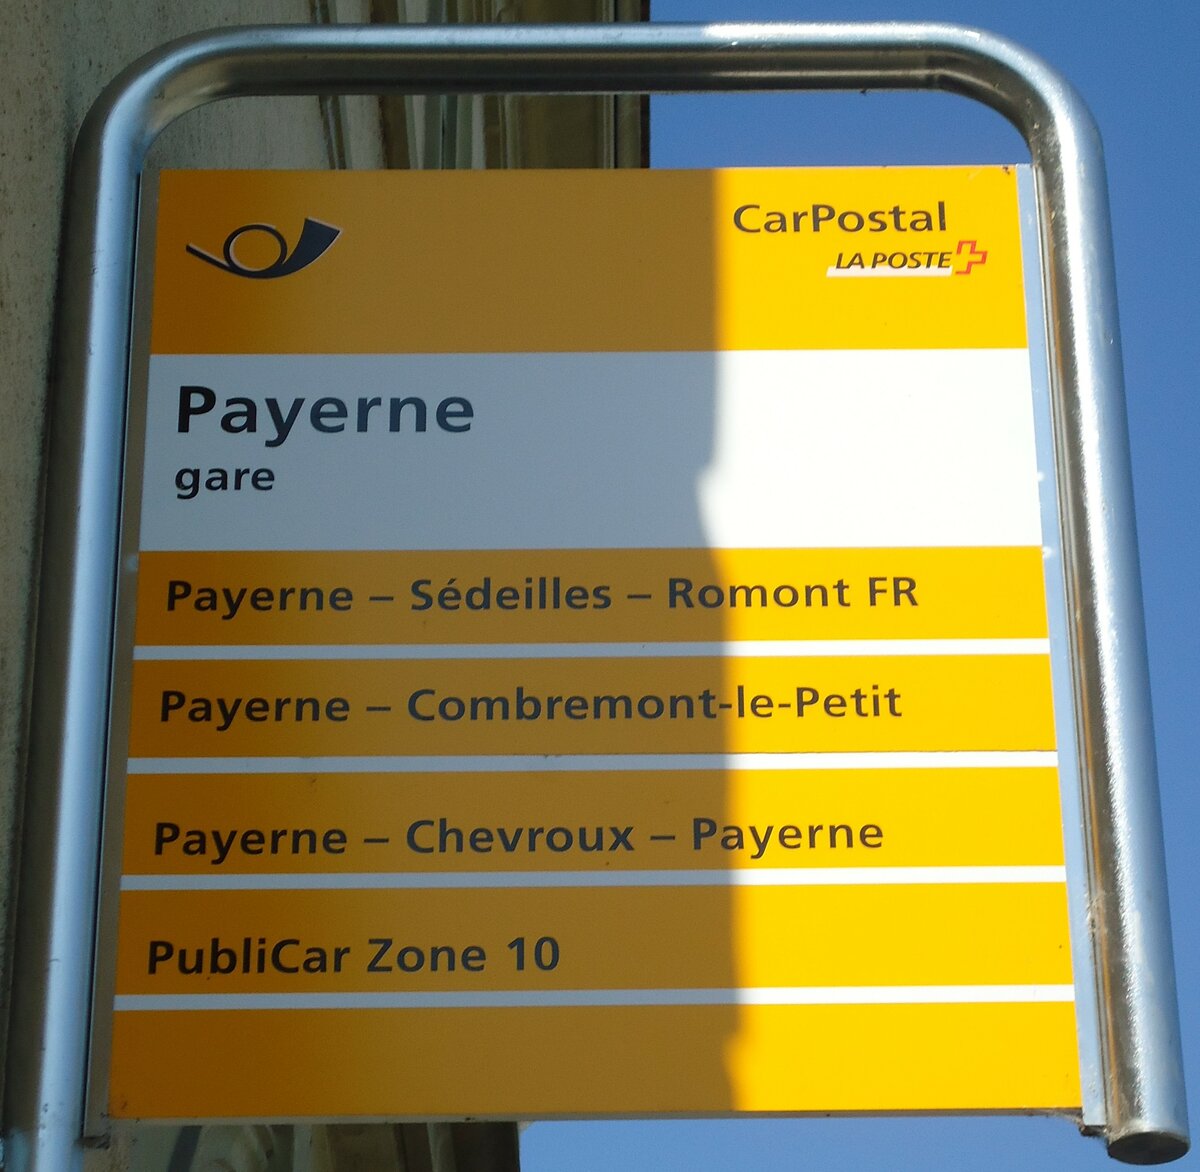 (135'650) - PostAuto-Haltestellenschild - Payerne, gare - am 20. August 2011